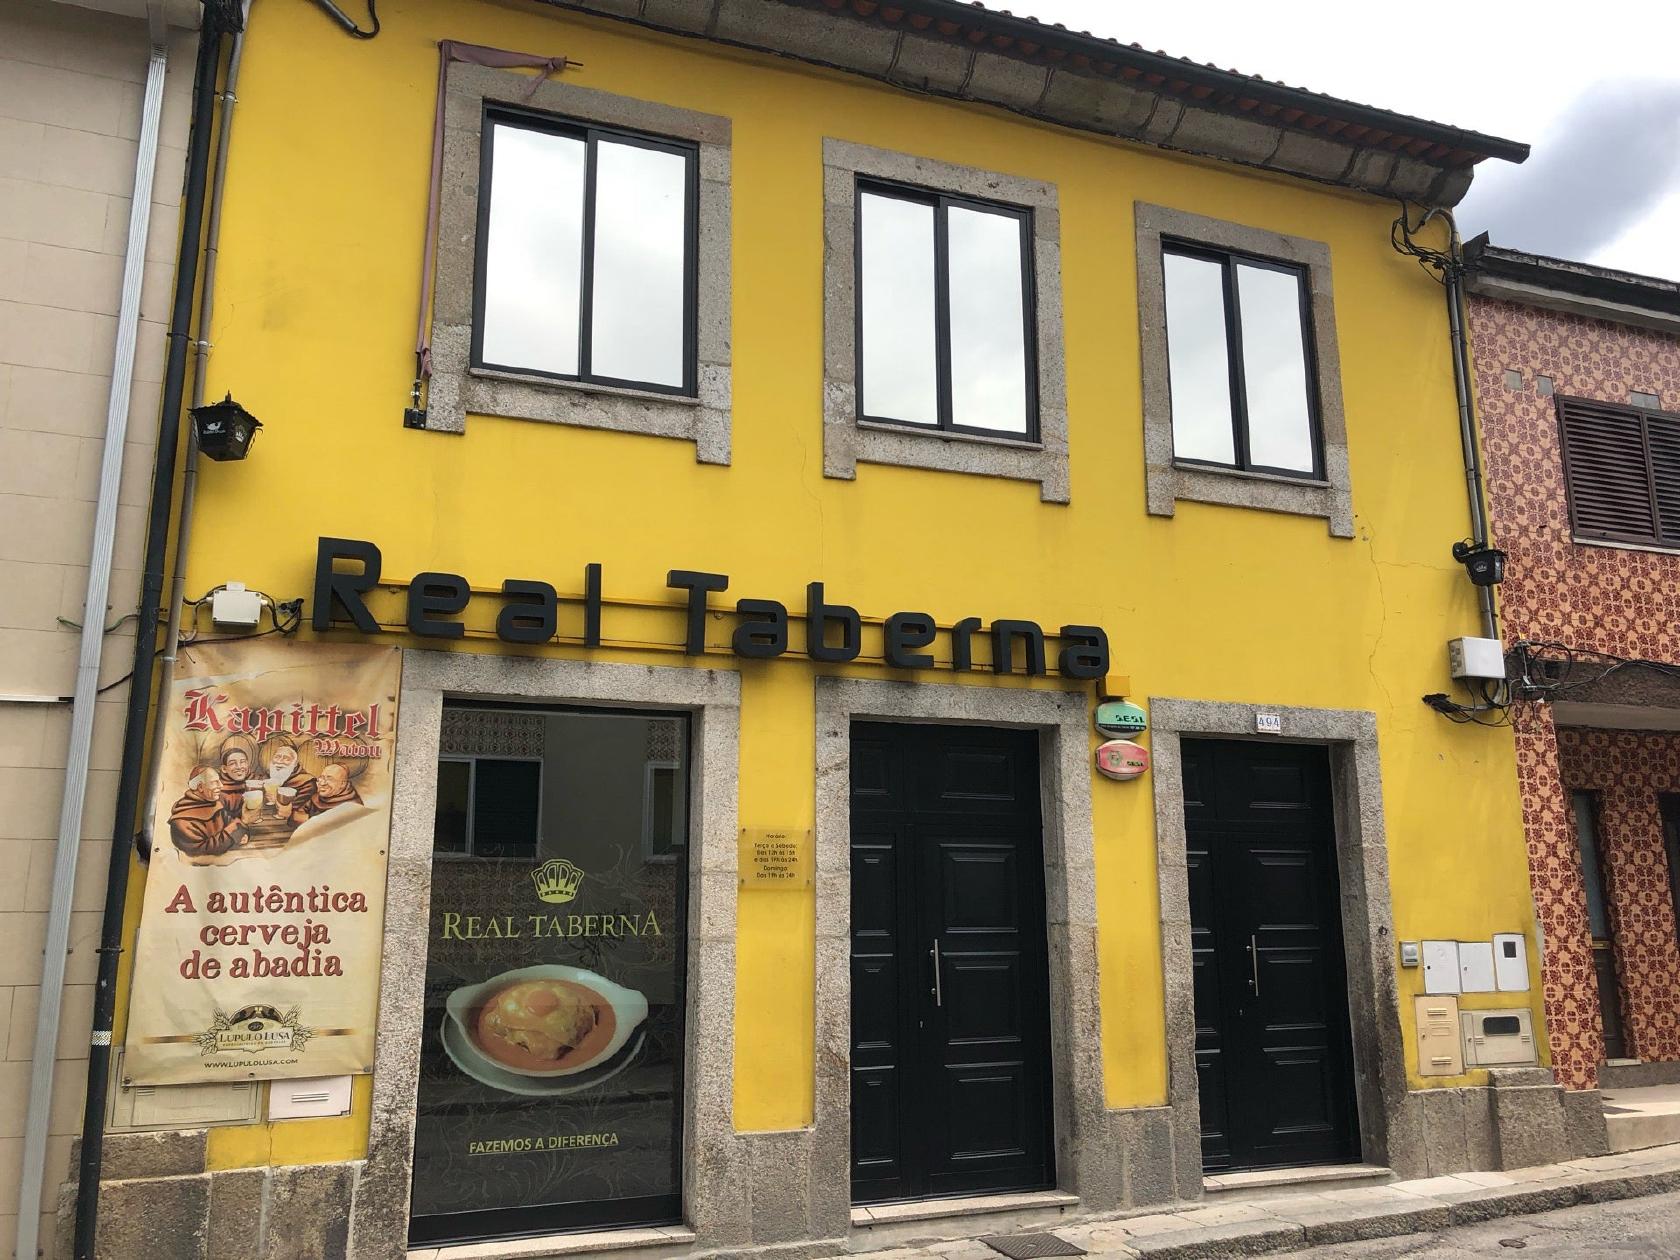 Enojado Preciso barro Restaurante Real Taberna, Braga - Opiniones del restaurante